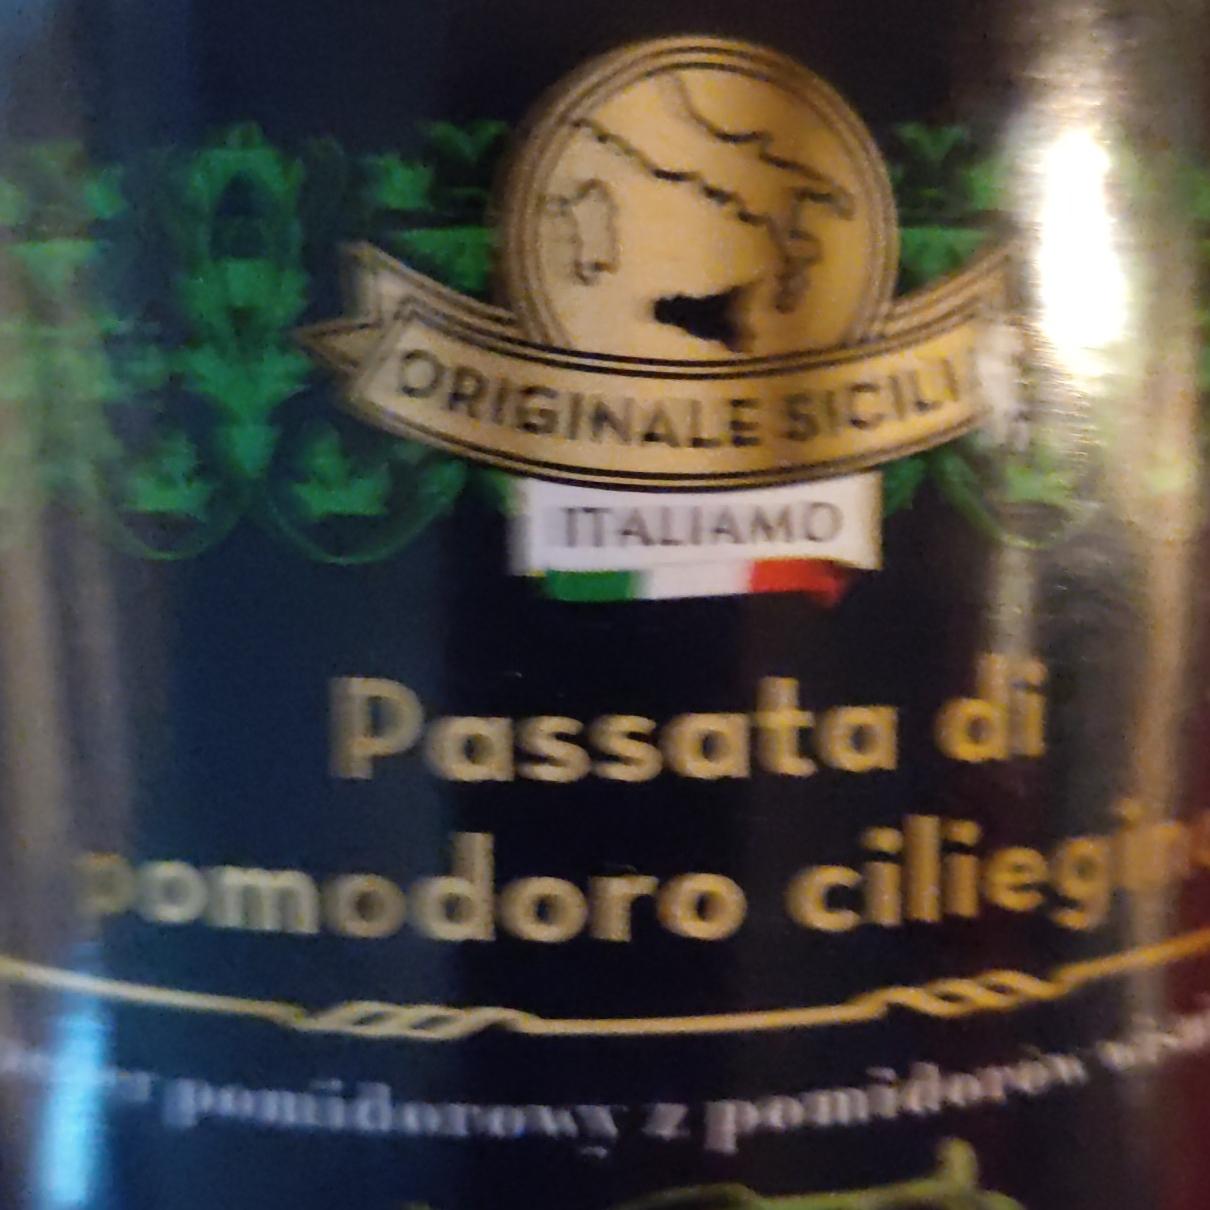 Zdjęcia - Passata di pomodoro ciliegino Italiamo